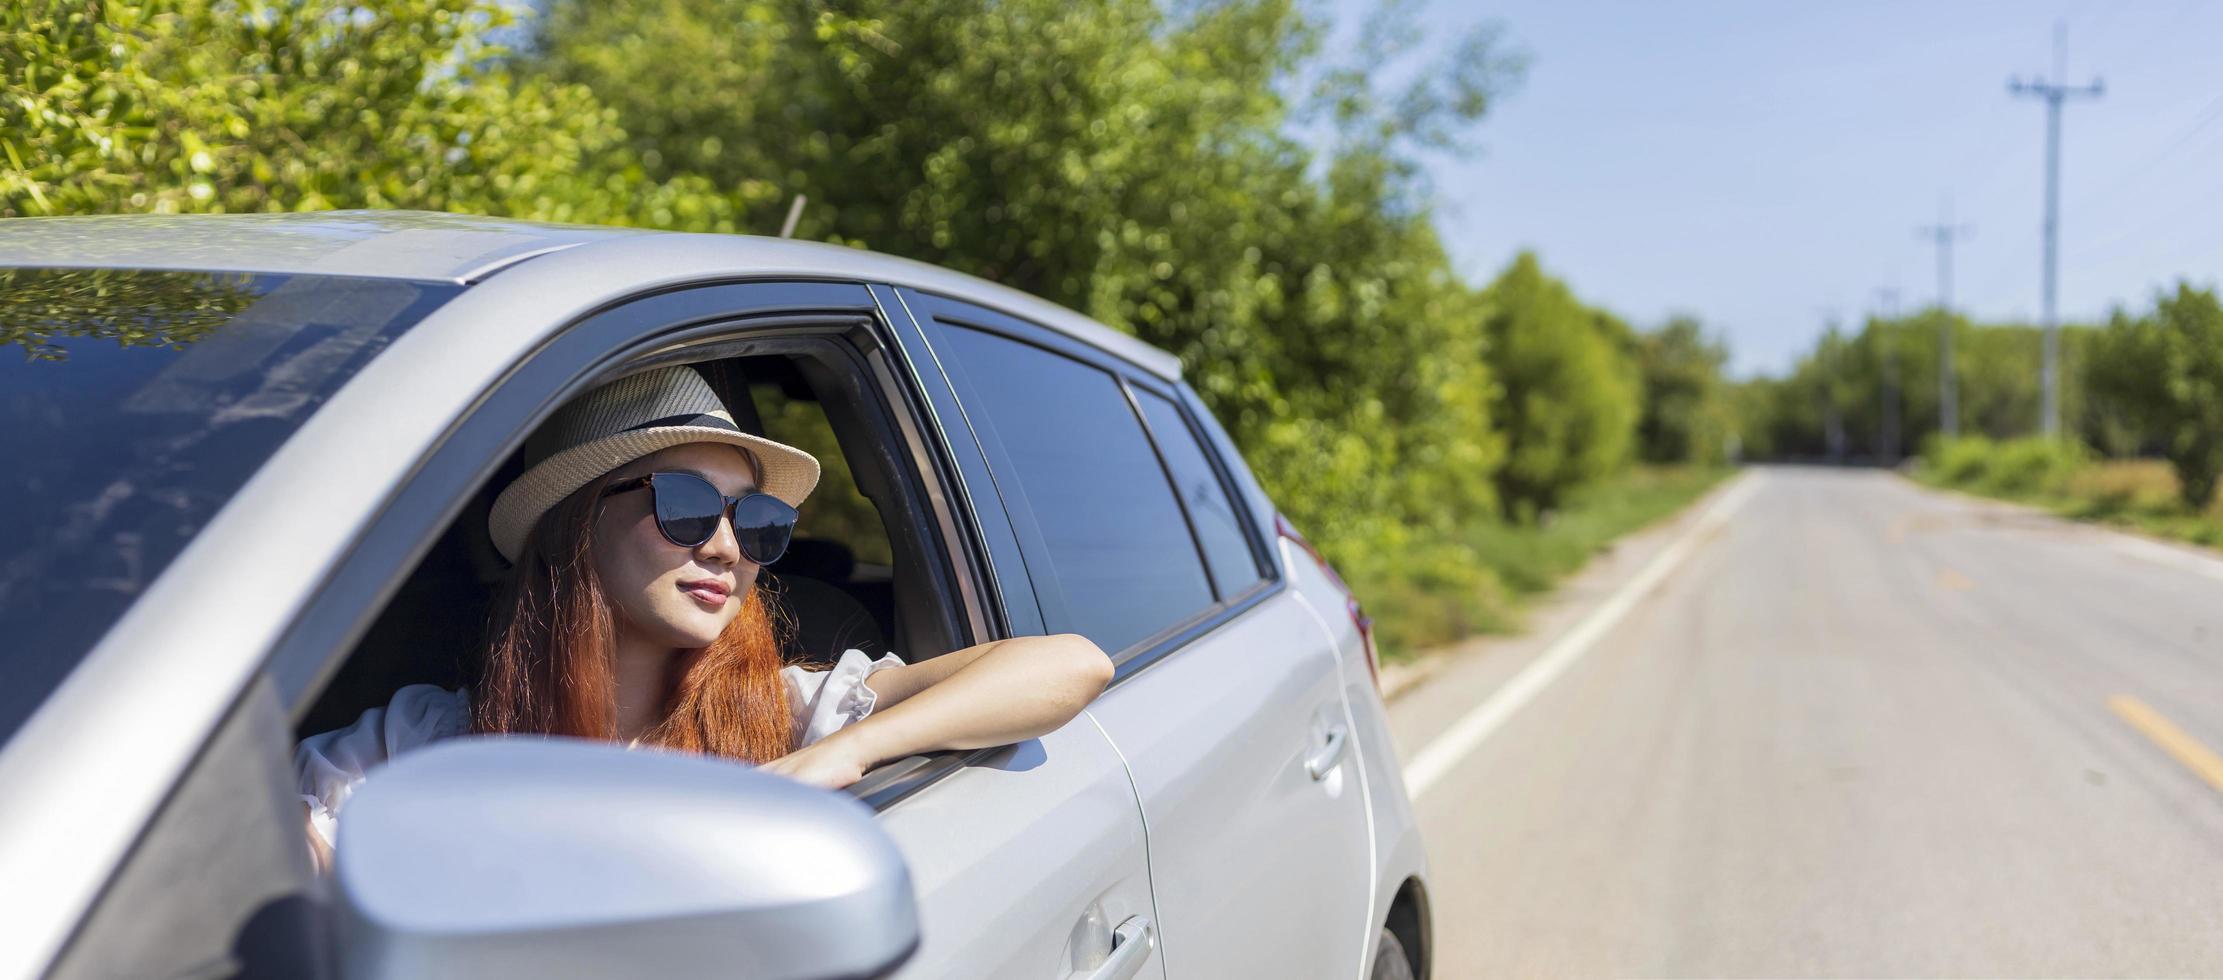 vrouw met gemberrood haar met een zonnebril die auto rijdt in een solo weekendje weg vakantie reis kijkt uit het raam in de zomer met weelderige groene natuur op het platteland weg voor vrijheid en avontuur foto